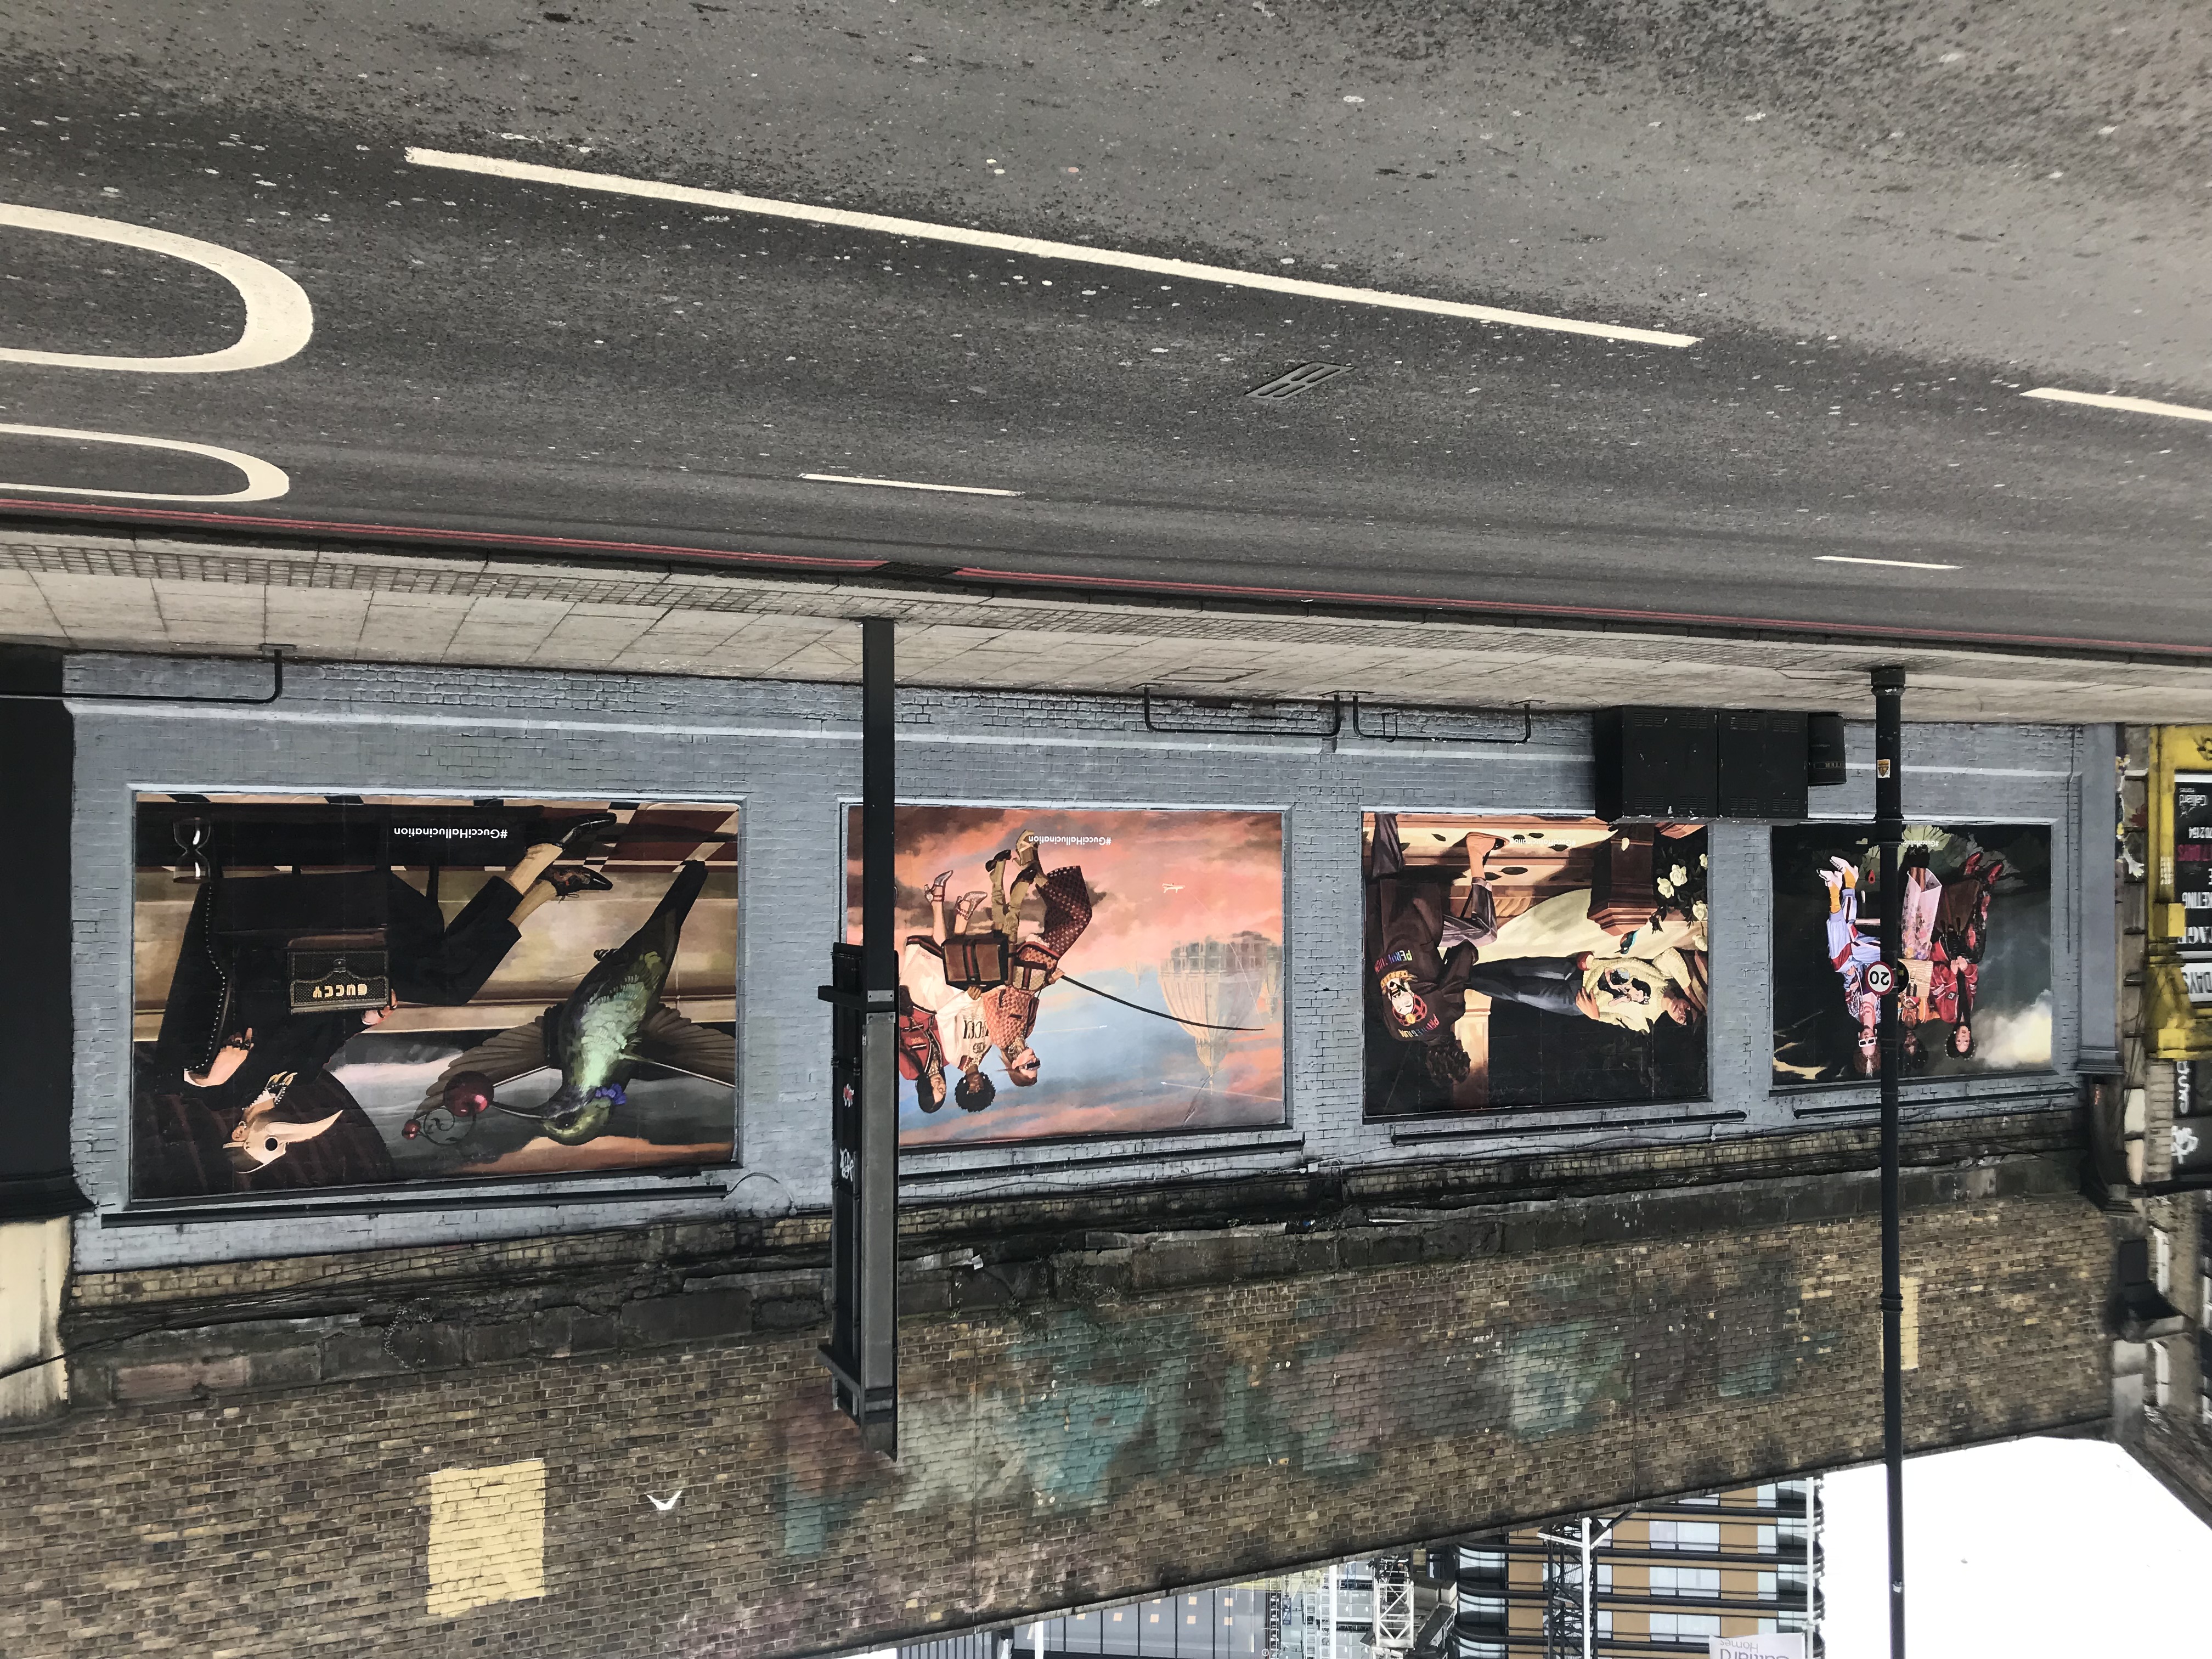 Forhåbentlig venskab binær GucciHallucination Shoreditch Art Wall - for London 2018 Fashion Week